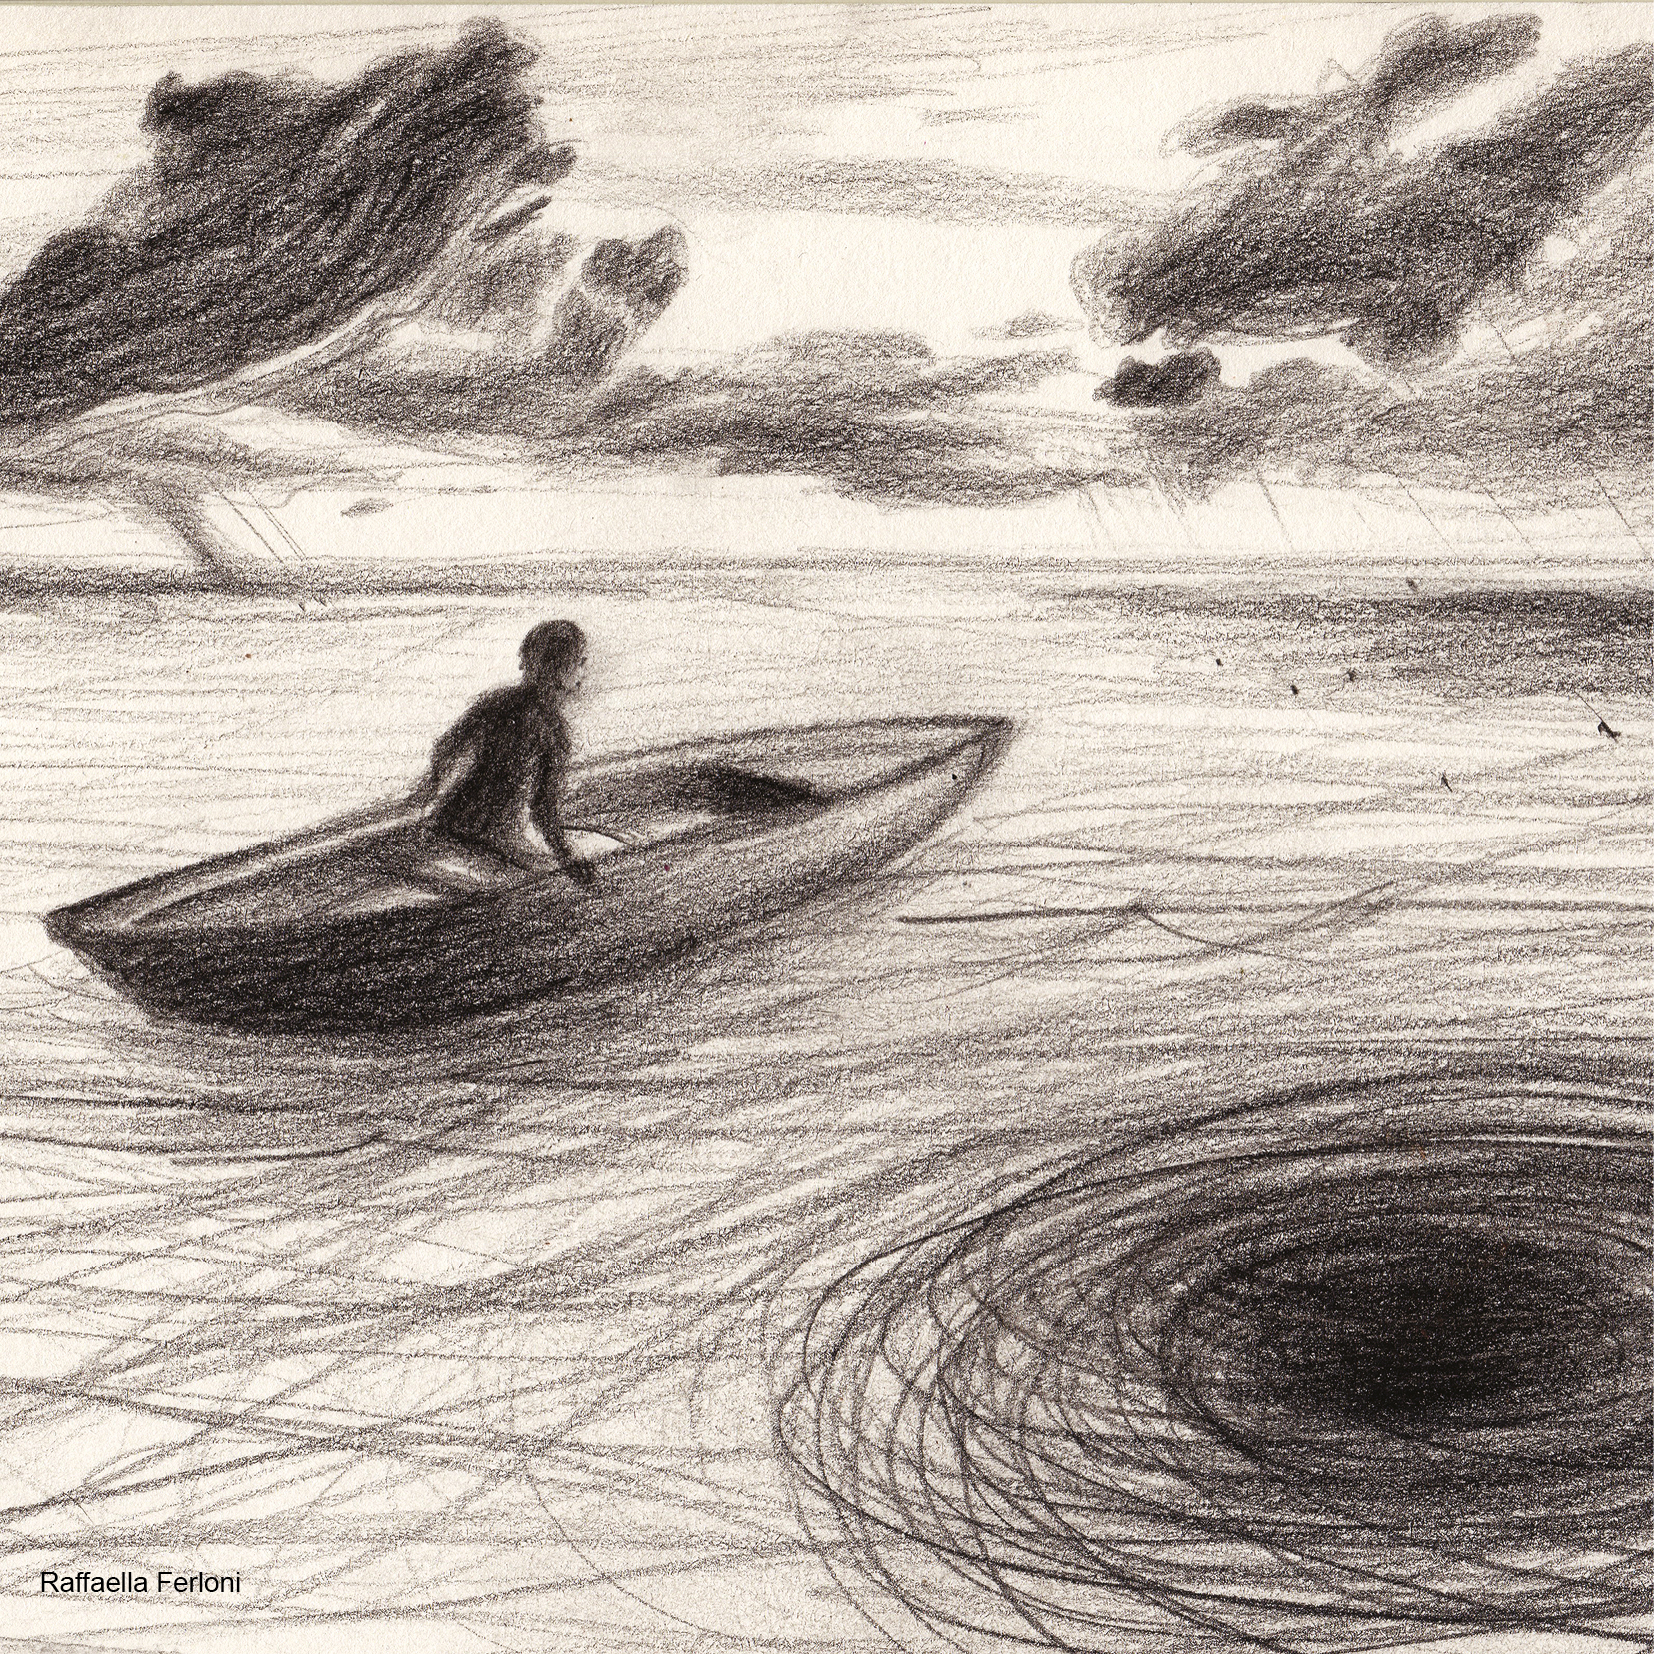 Dibujo de una persona en una canoa y un fondo de nubes formando un paisaje